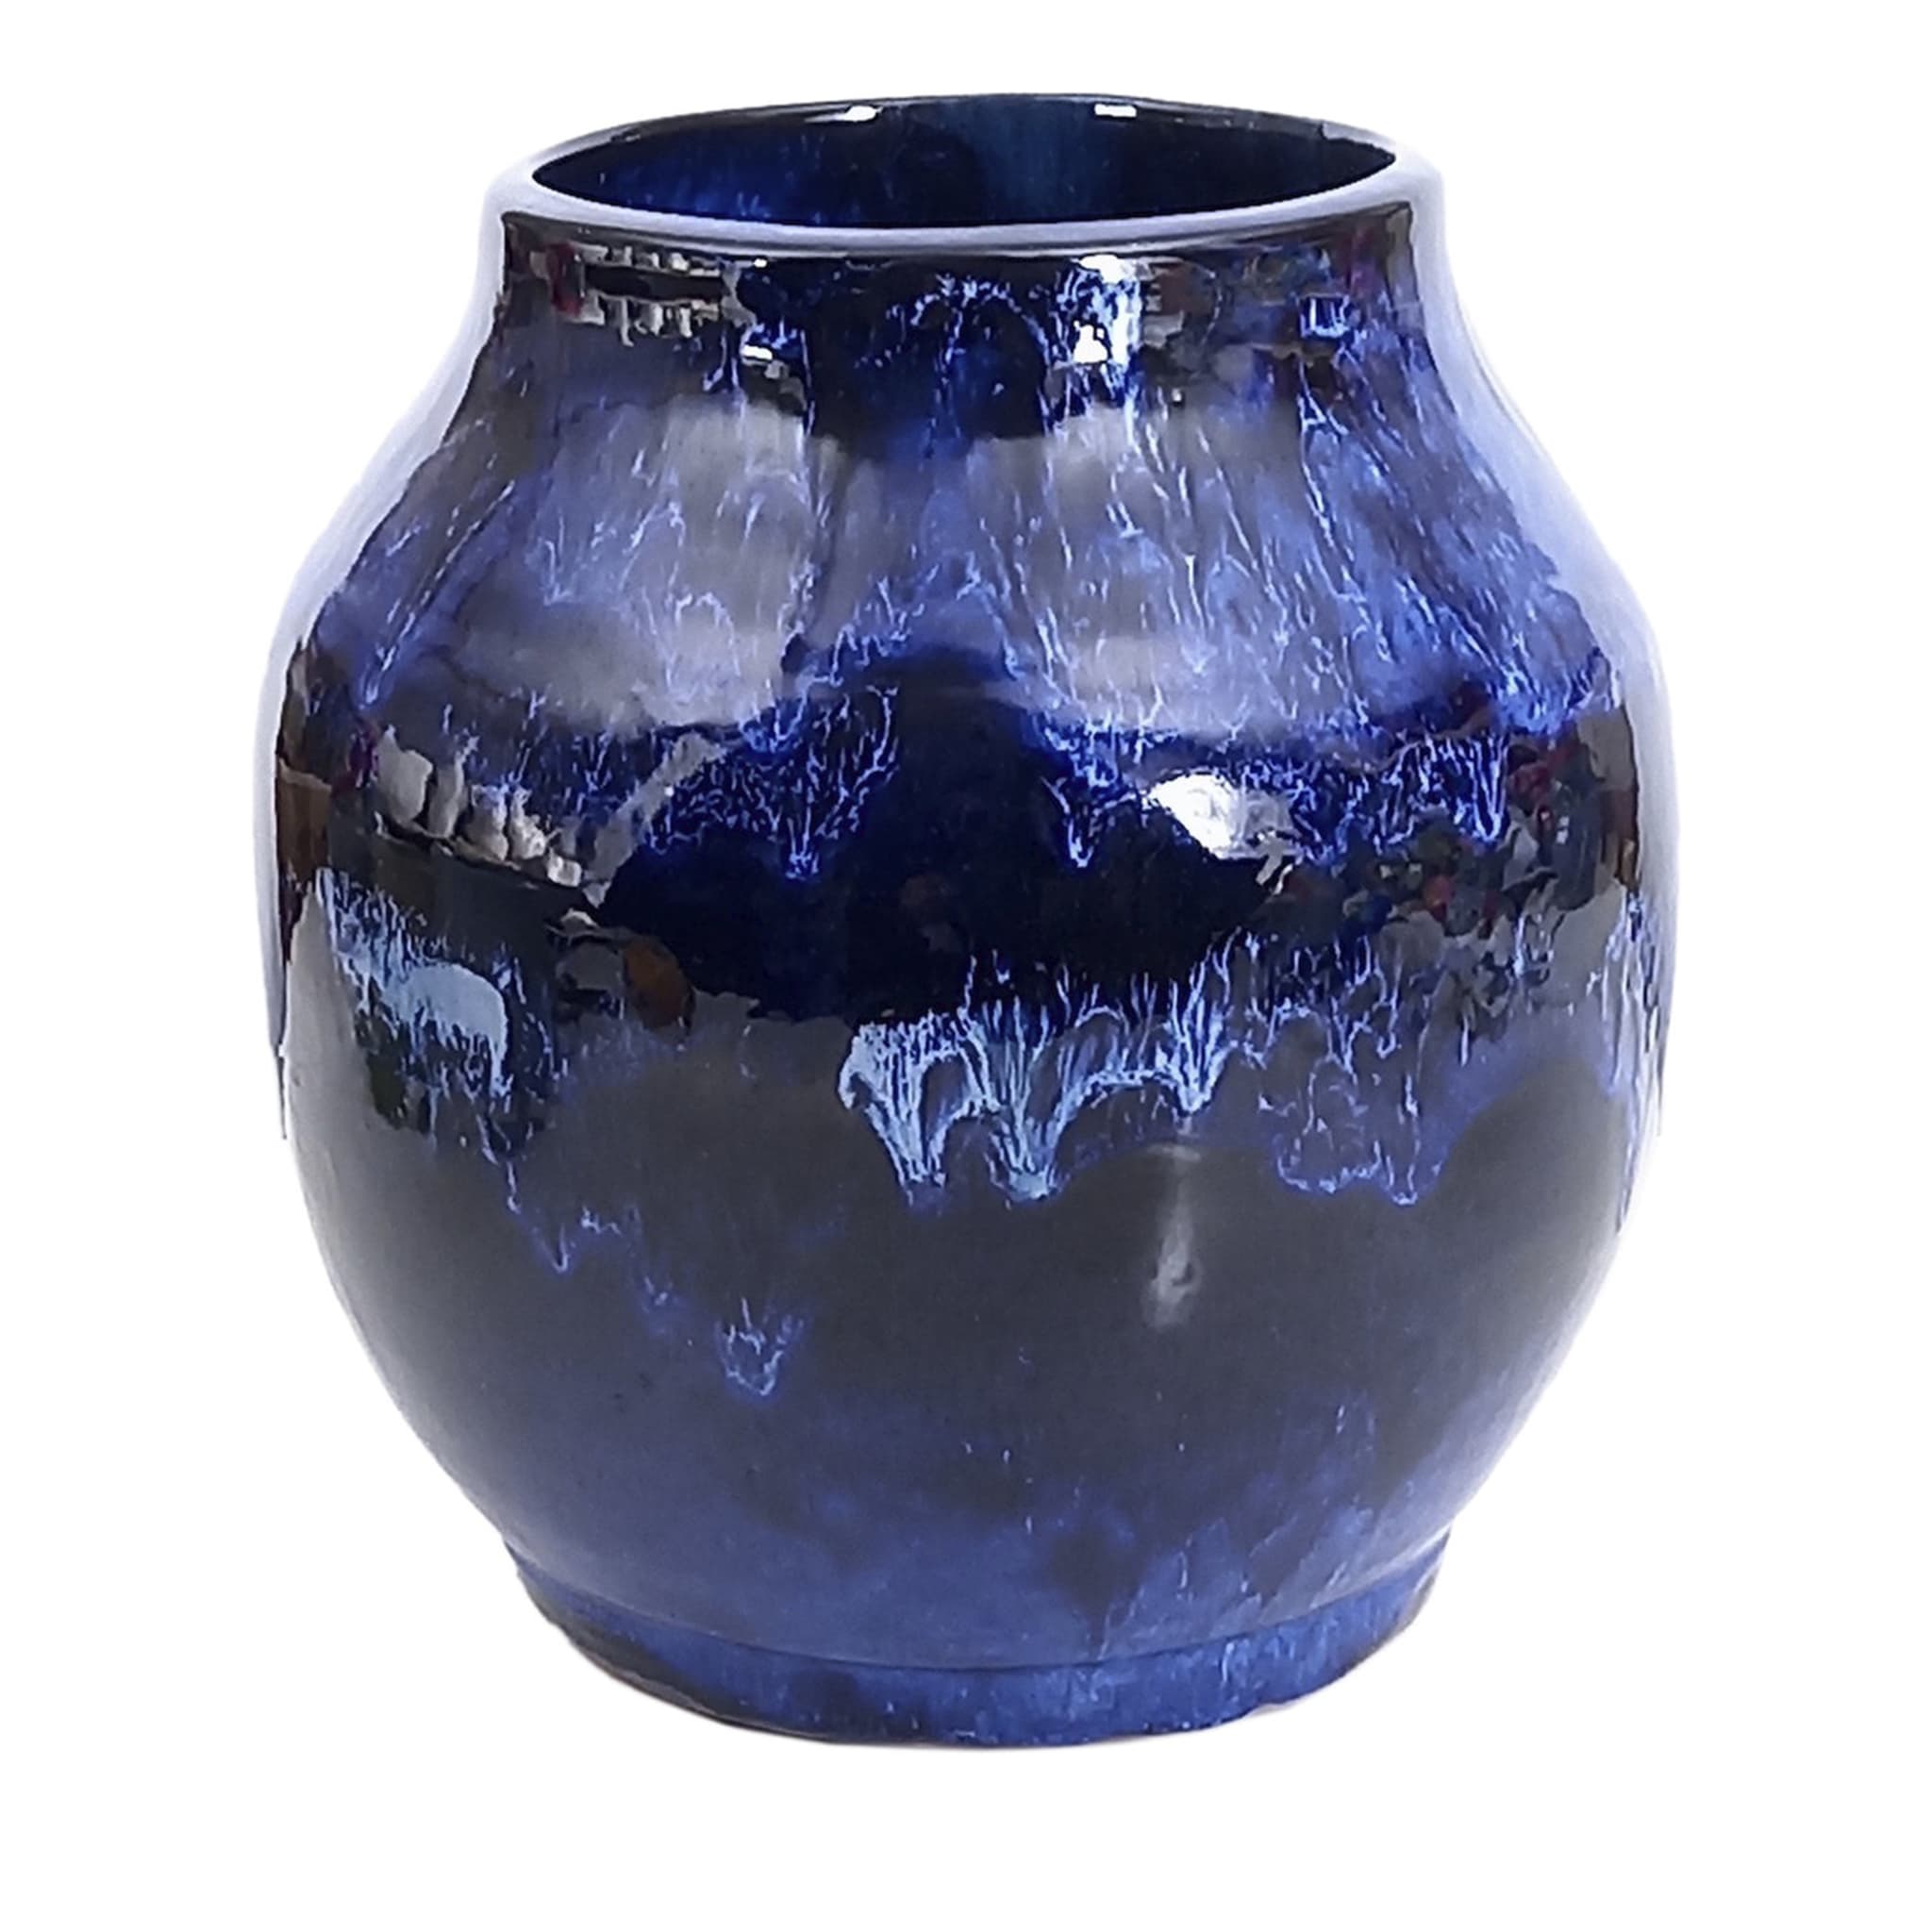 Black 'n' Blue Vase - Main view